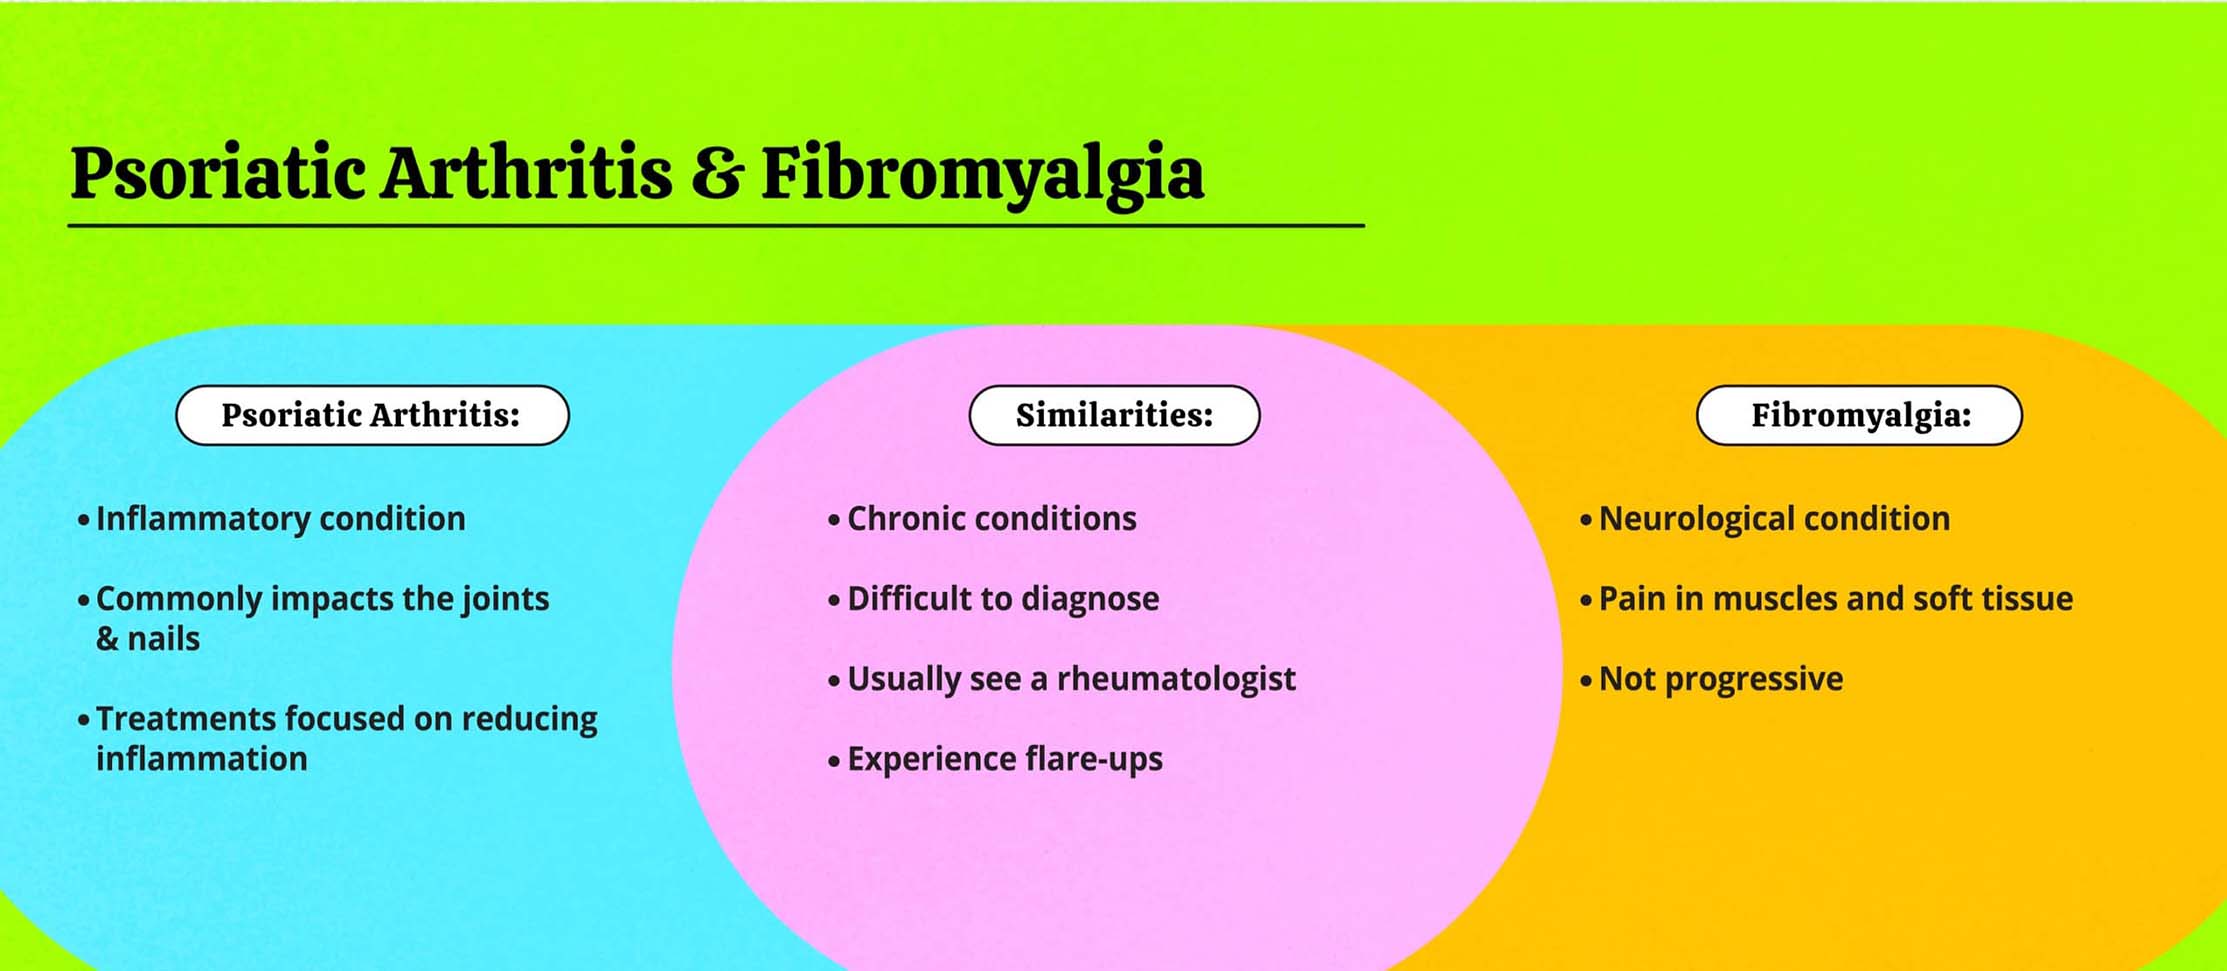 PsA & fibromyalgia